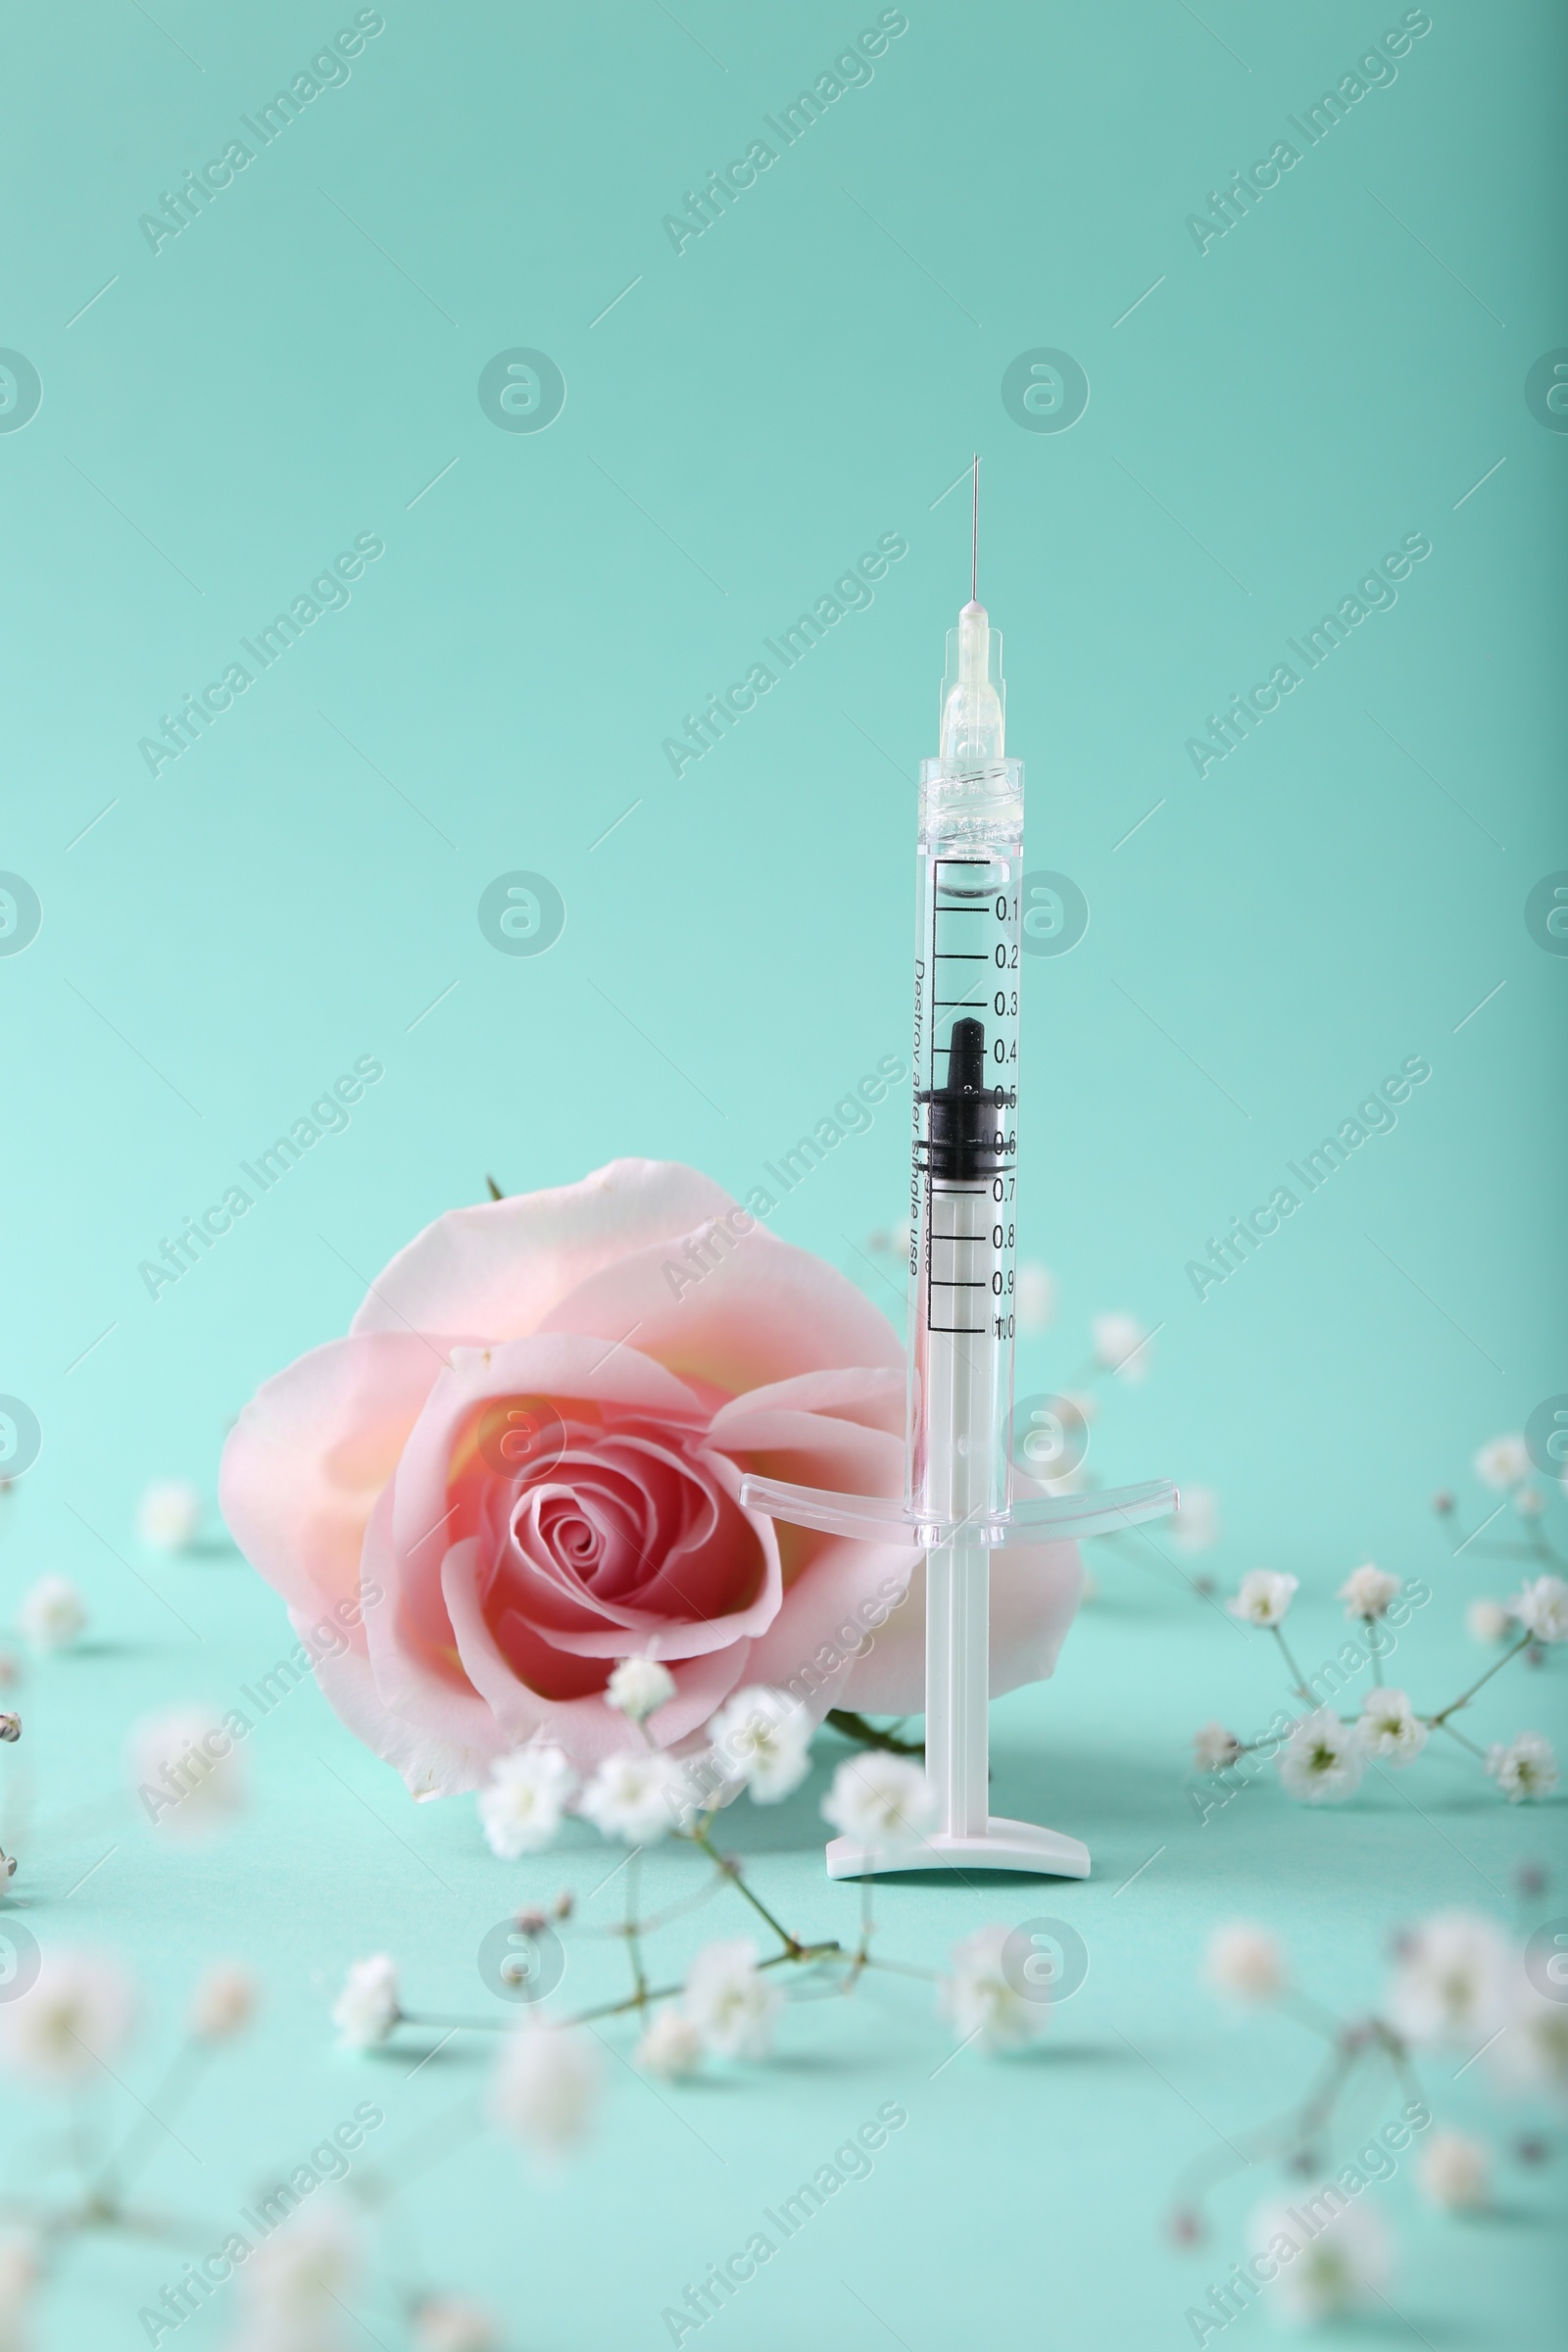 Photo of Cosmetology. Medical syringe, rose and gypsophila flowers on turquoise background